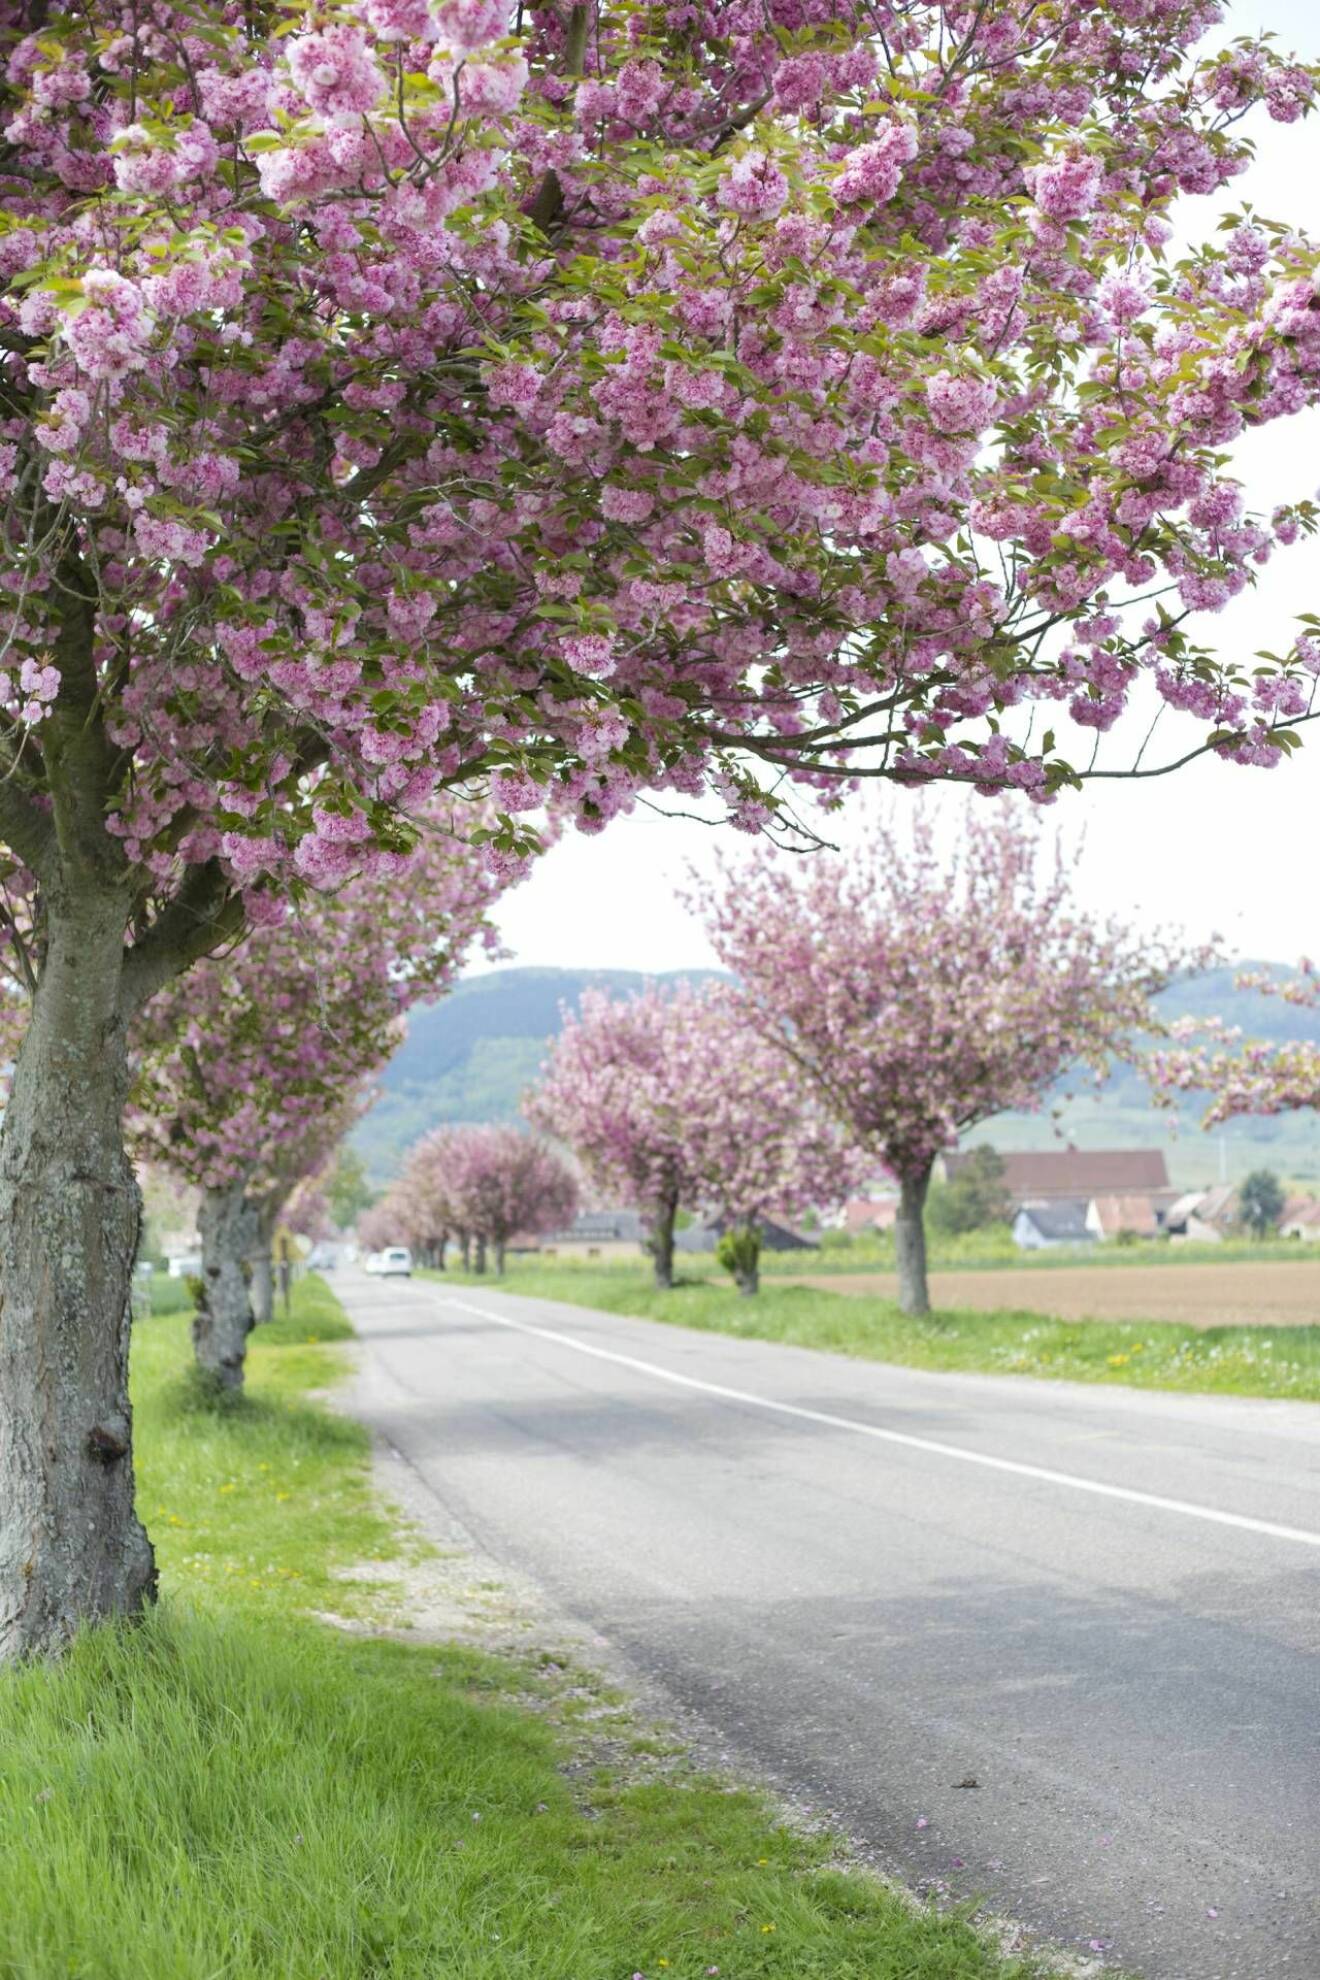 Blommande körsbärsträd kantar en väg. 